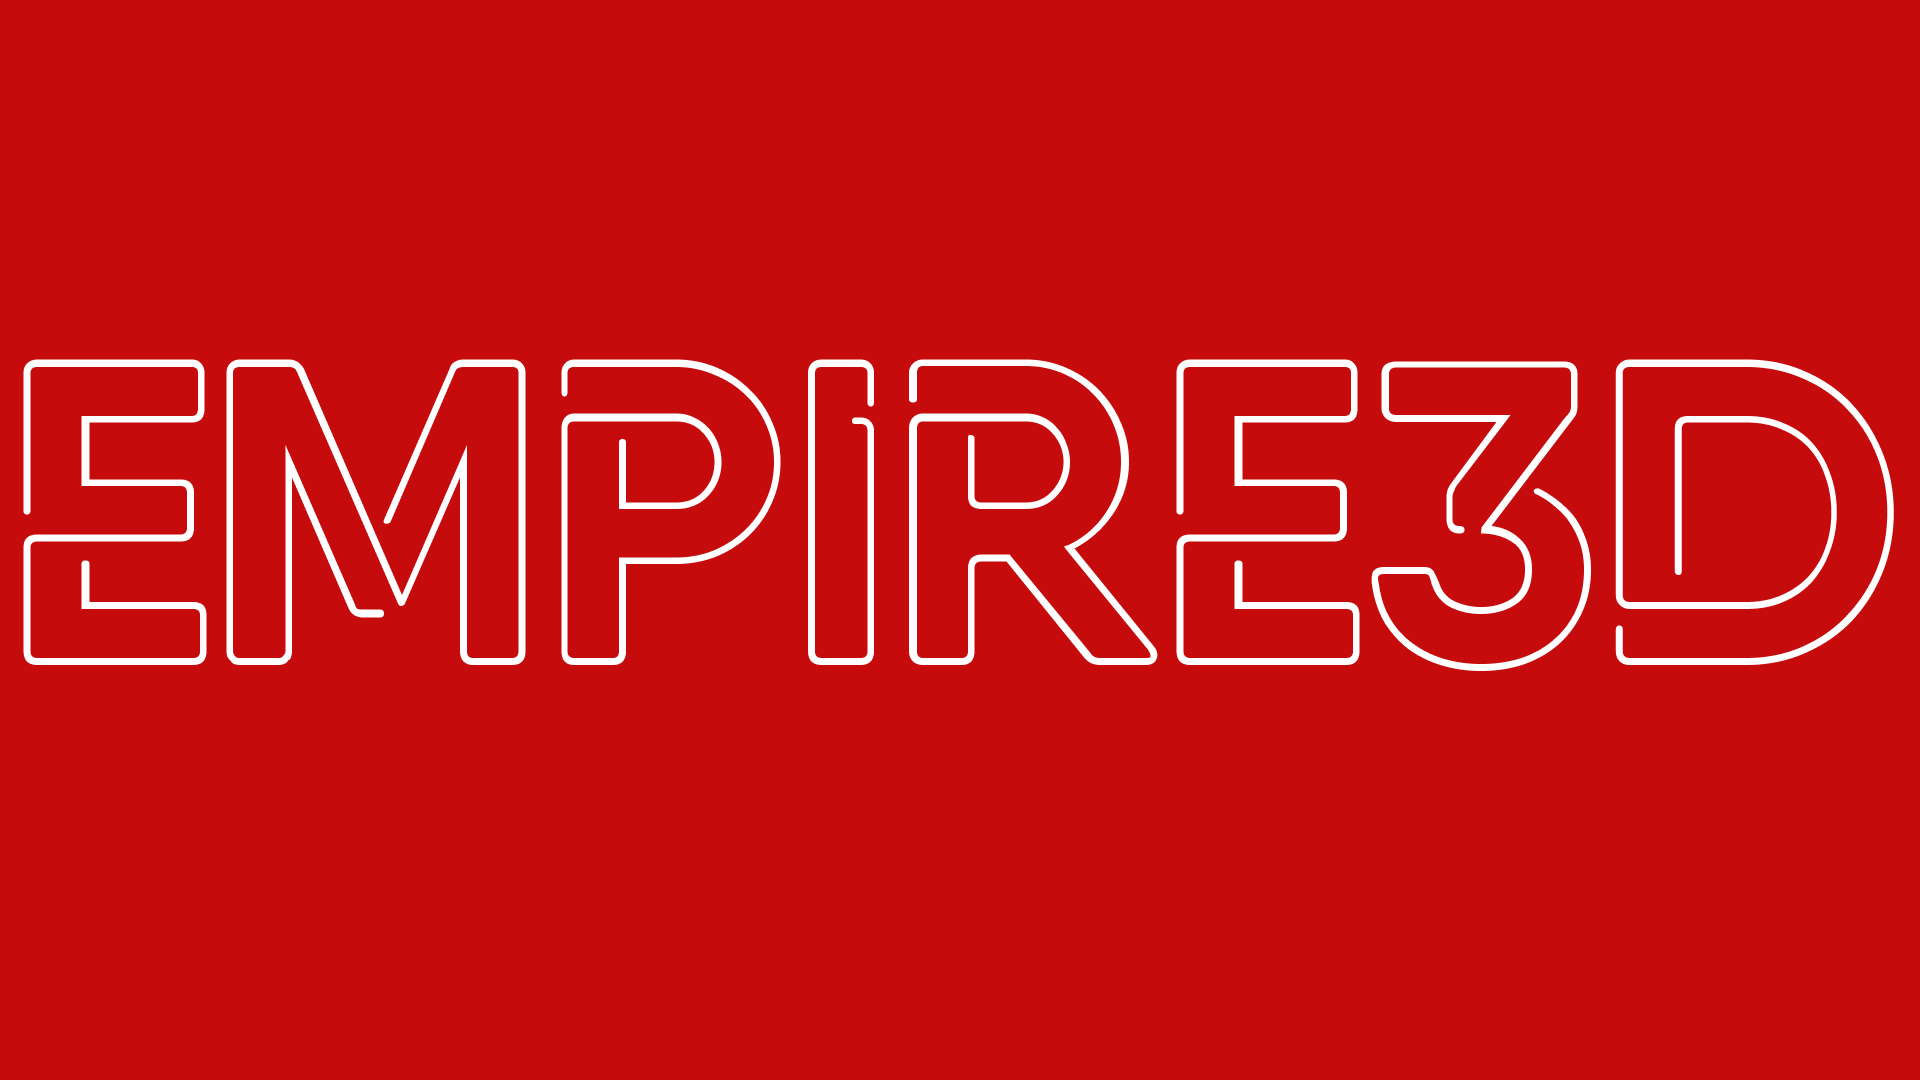 Empire3D